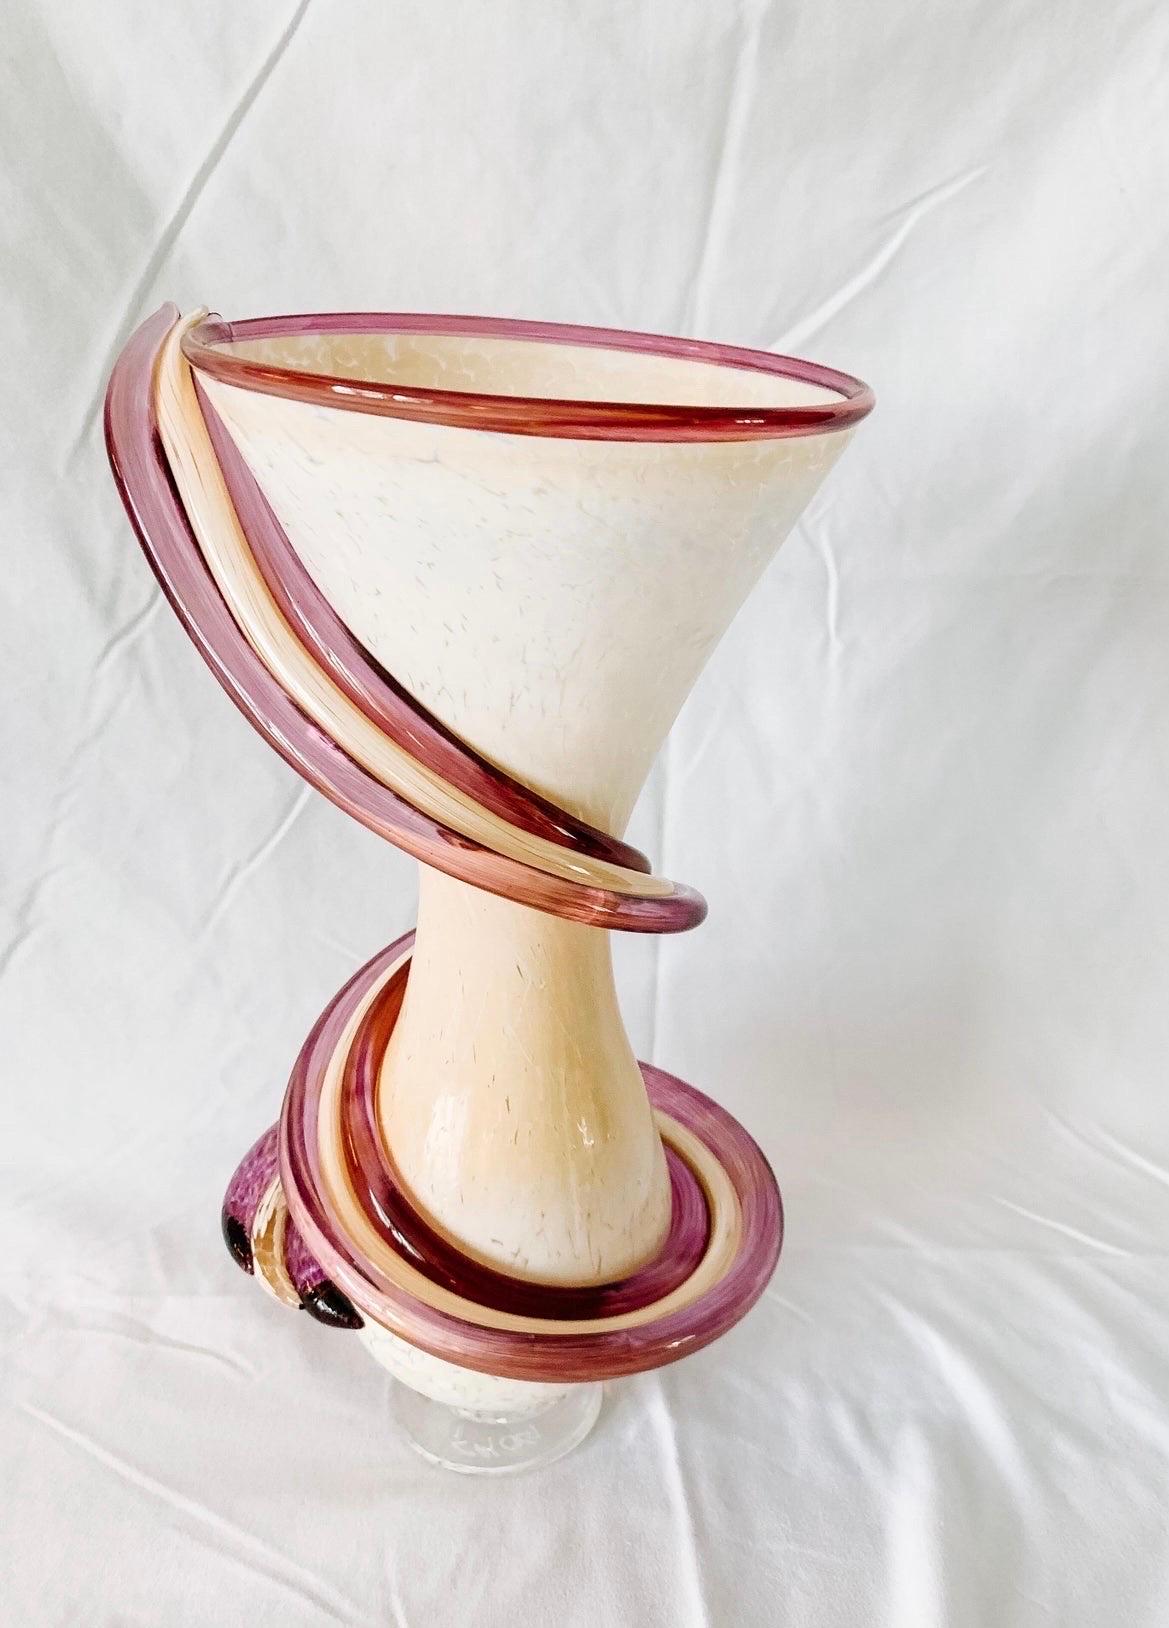 Magnifique vase en verre d'art de style Murano. Signé Chog 2012. Aucun défaut. Le blanc, le crème et le violet composent cette magnifique pièce pour votre collection de verre d'art.